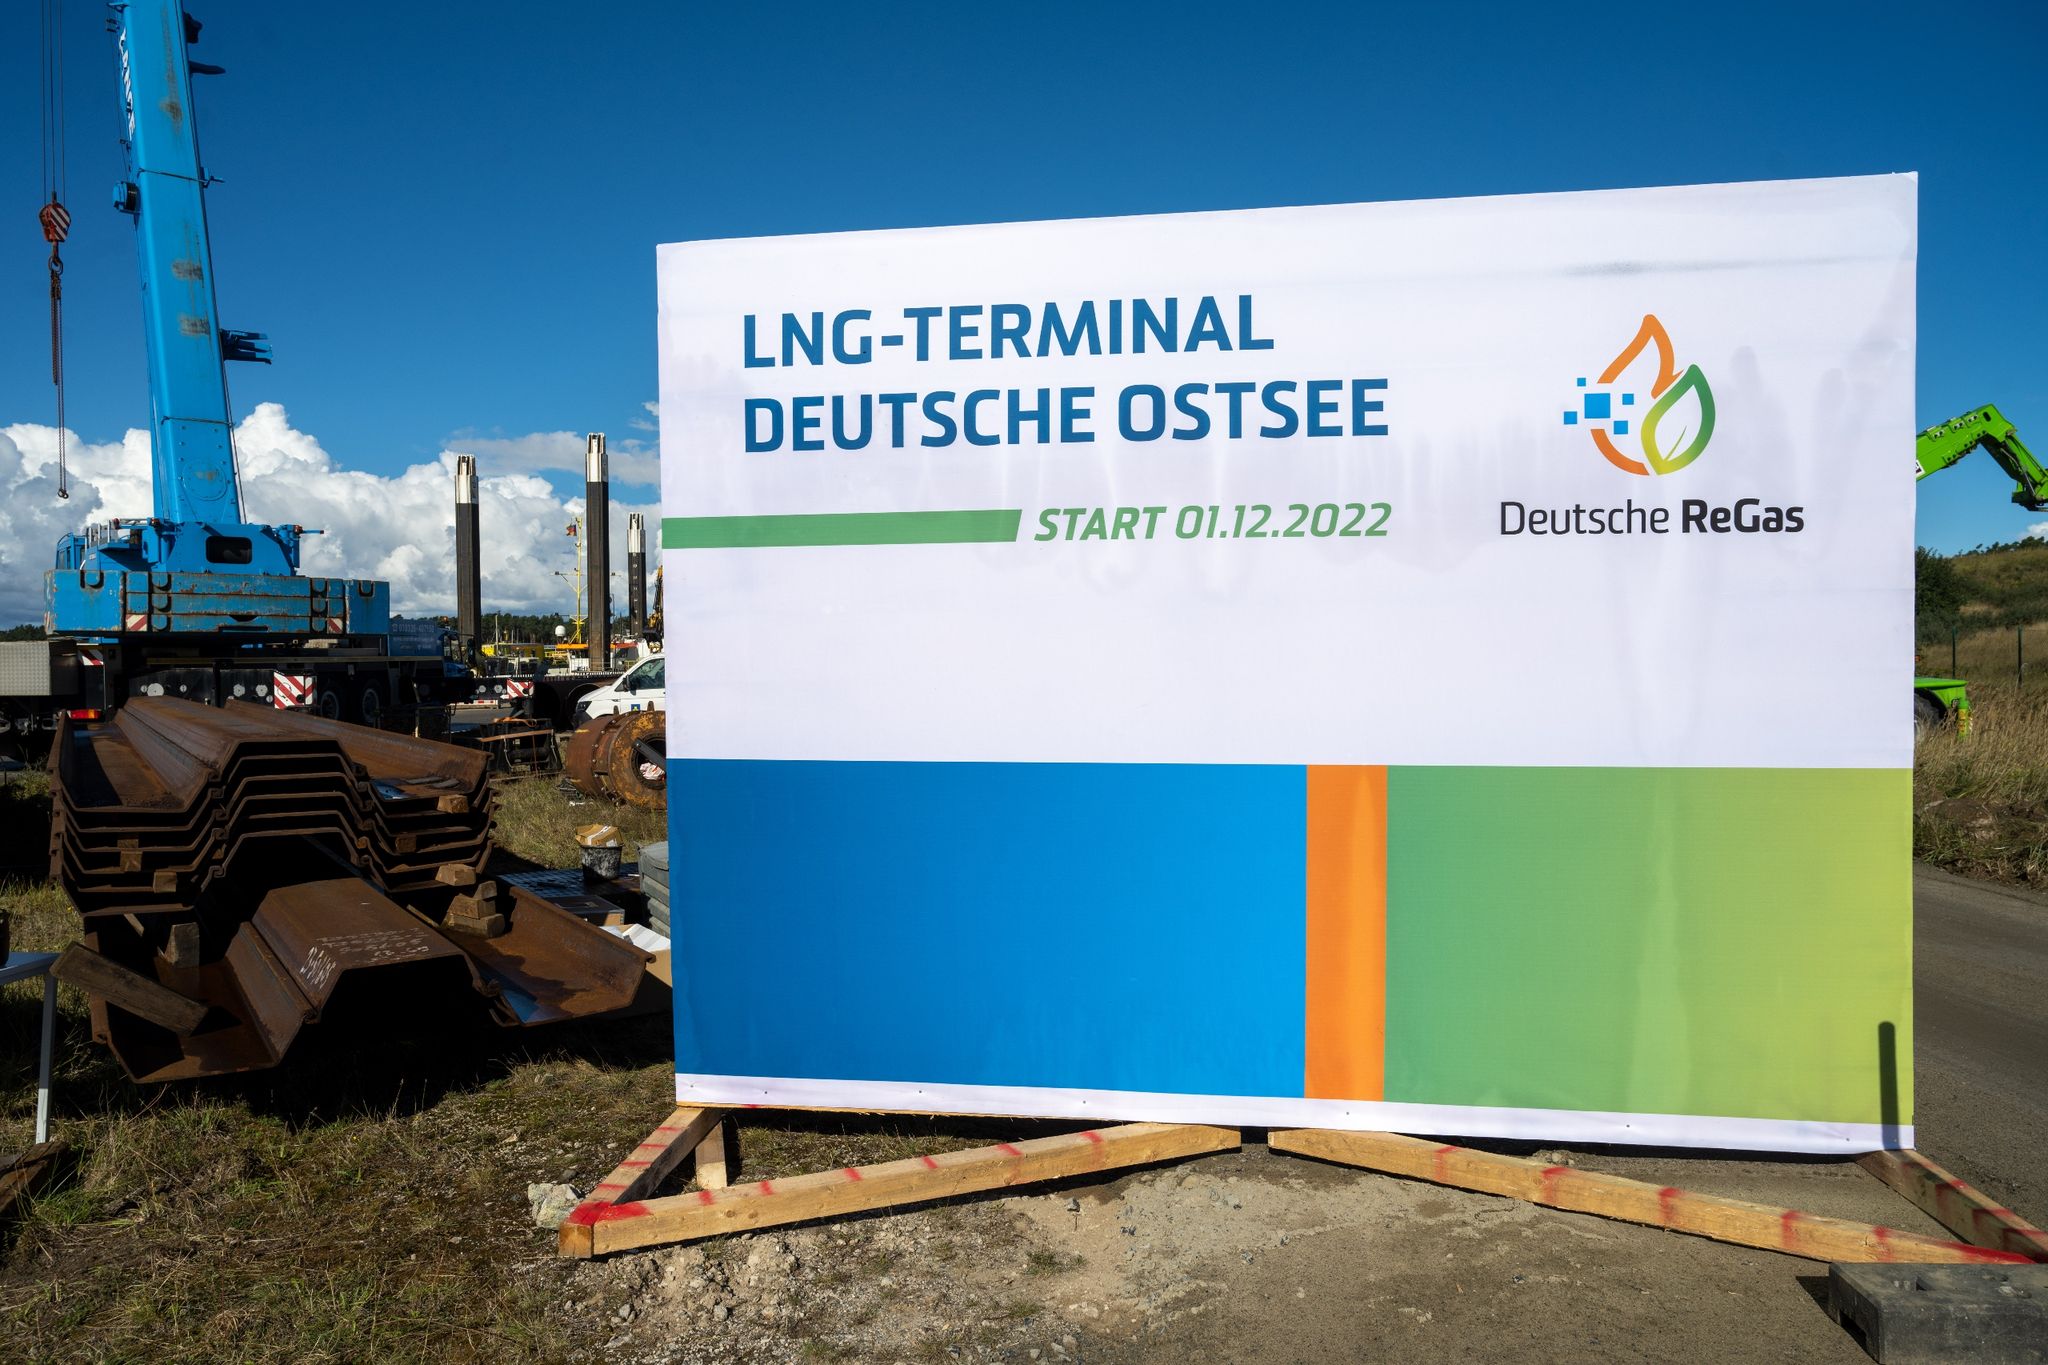 Blick auf ein Bausschild auf der Baustelle LNG-Terminal "Deutsche Ostsee“.